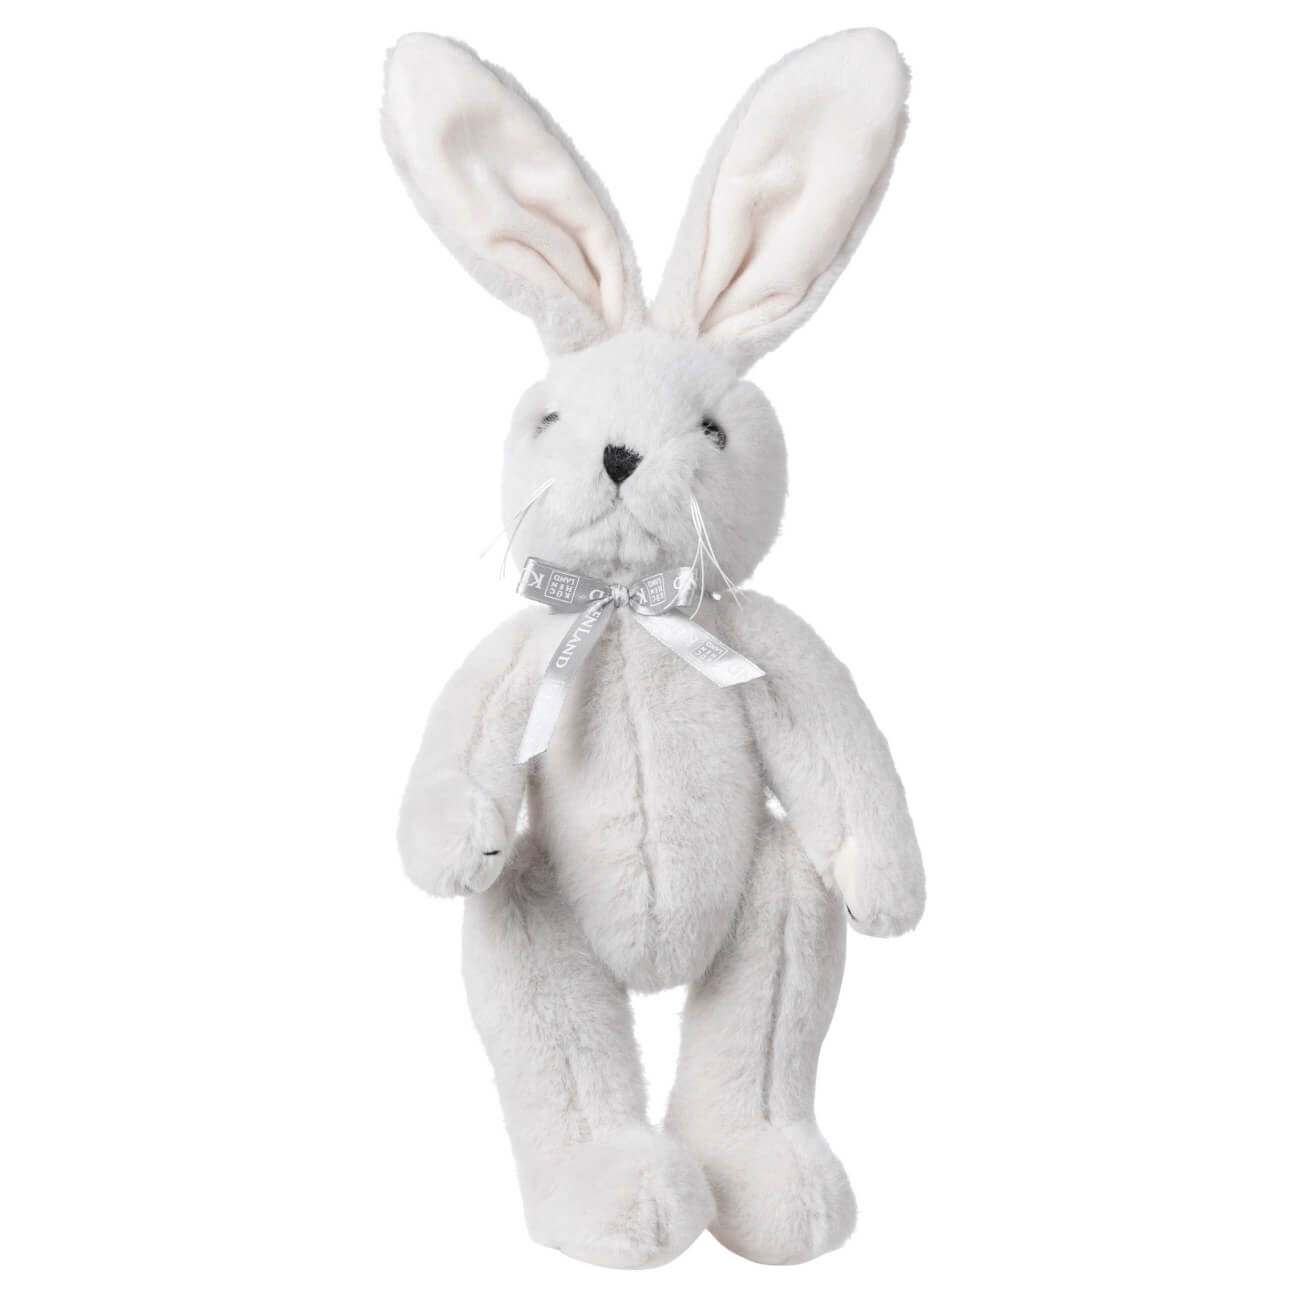 Игрушка, 30 см, мягкая, с подвижными лапами, полиэстер, светло-серая, Кролик, Rabbit toy игрушка антистресс 9 см полиуретан серая заяц rabbit